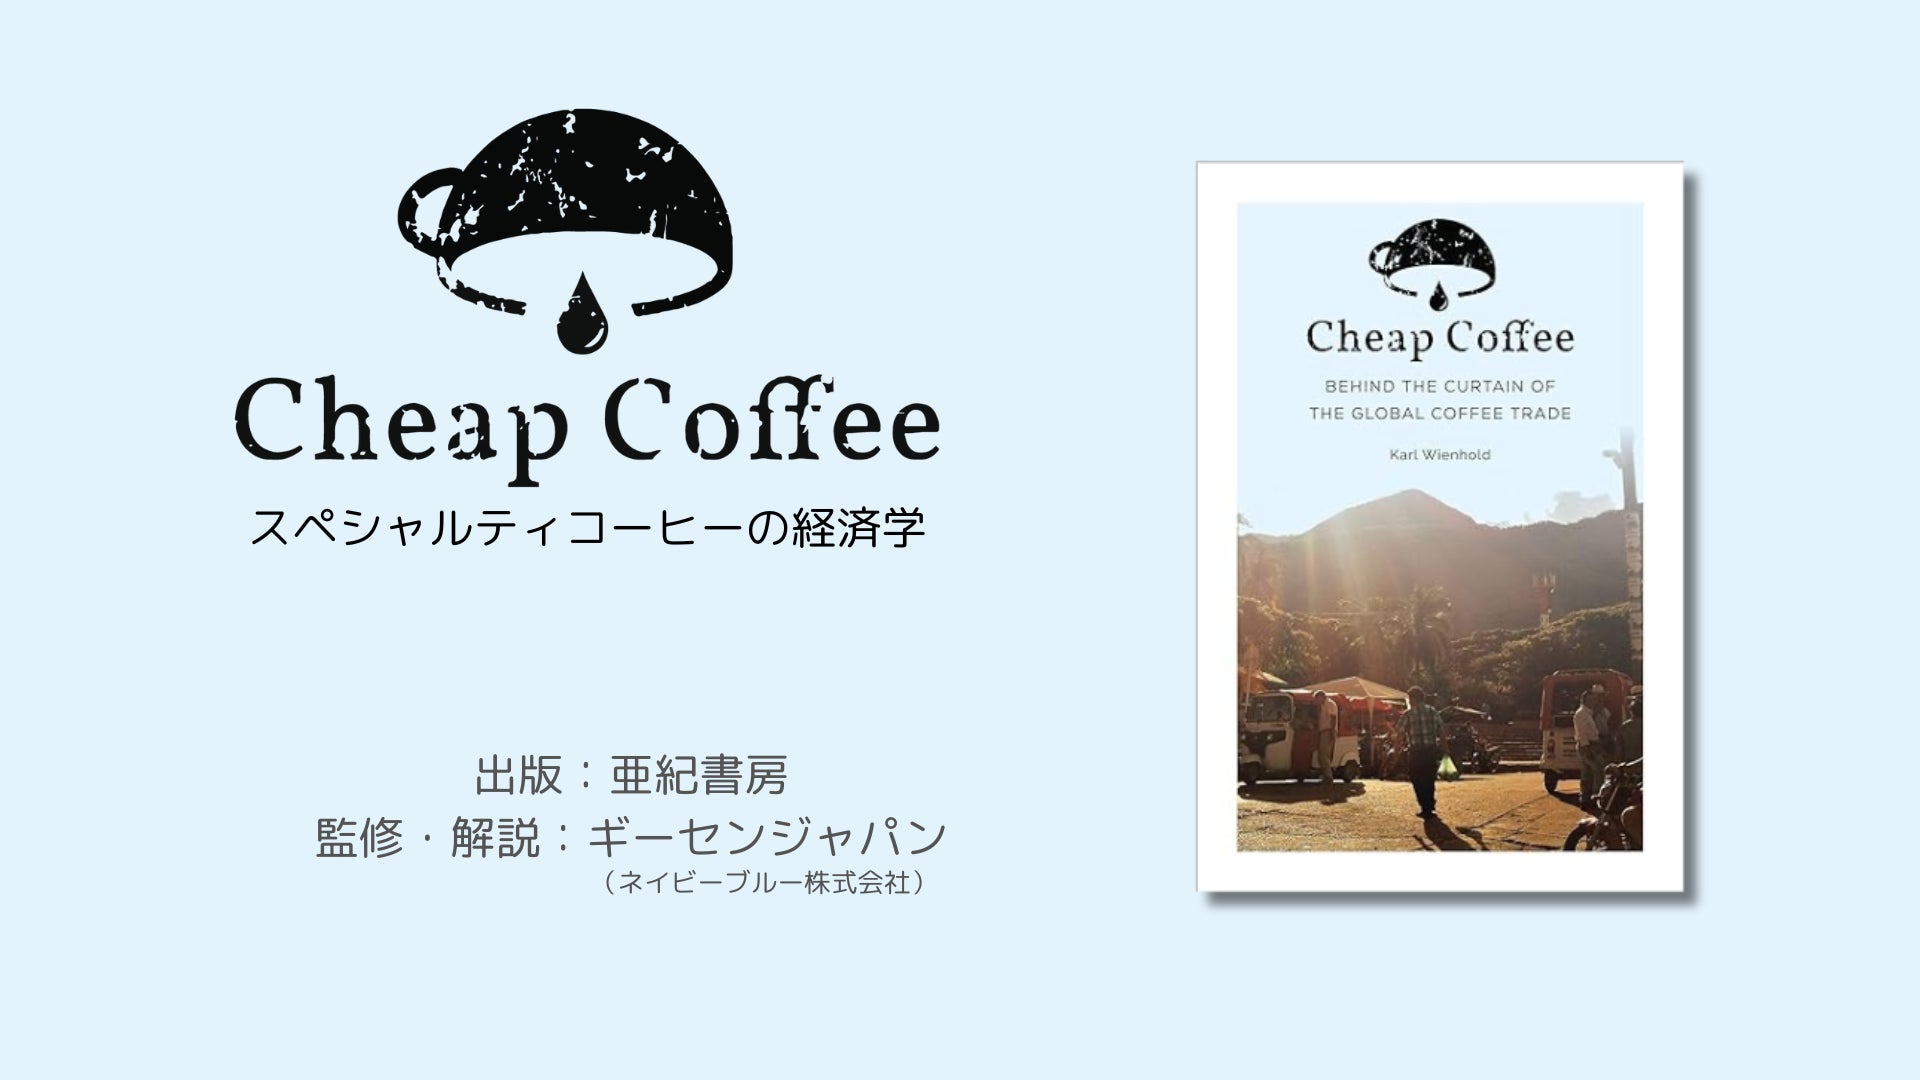 【事前予約開始】スペシャルティコーヒーの経済学を紐解く書籍「Cheap Coffee」が4月6日に出版決定！ギーセンジャパン監修